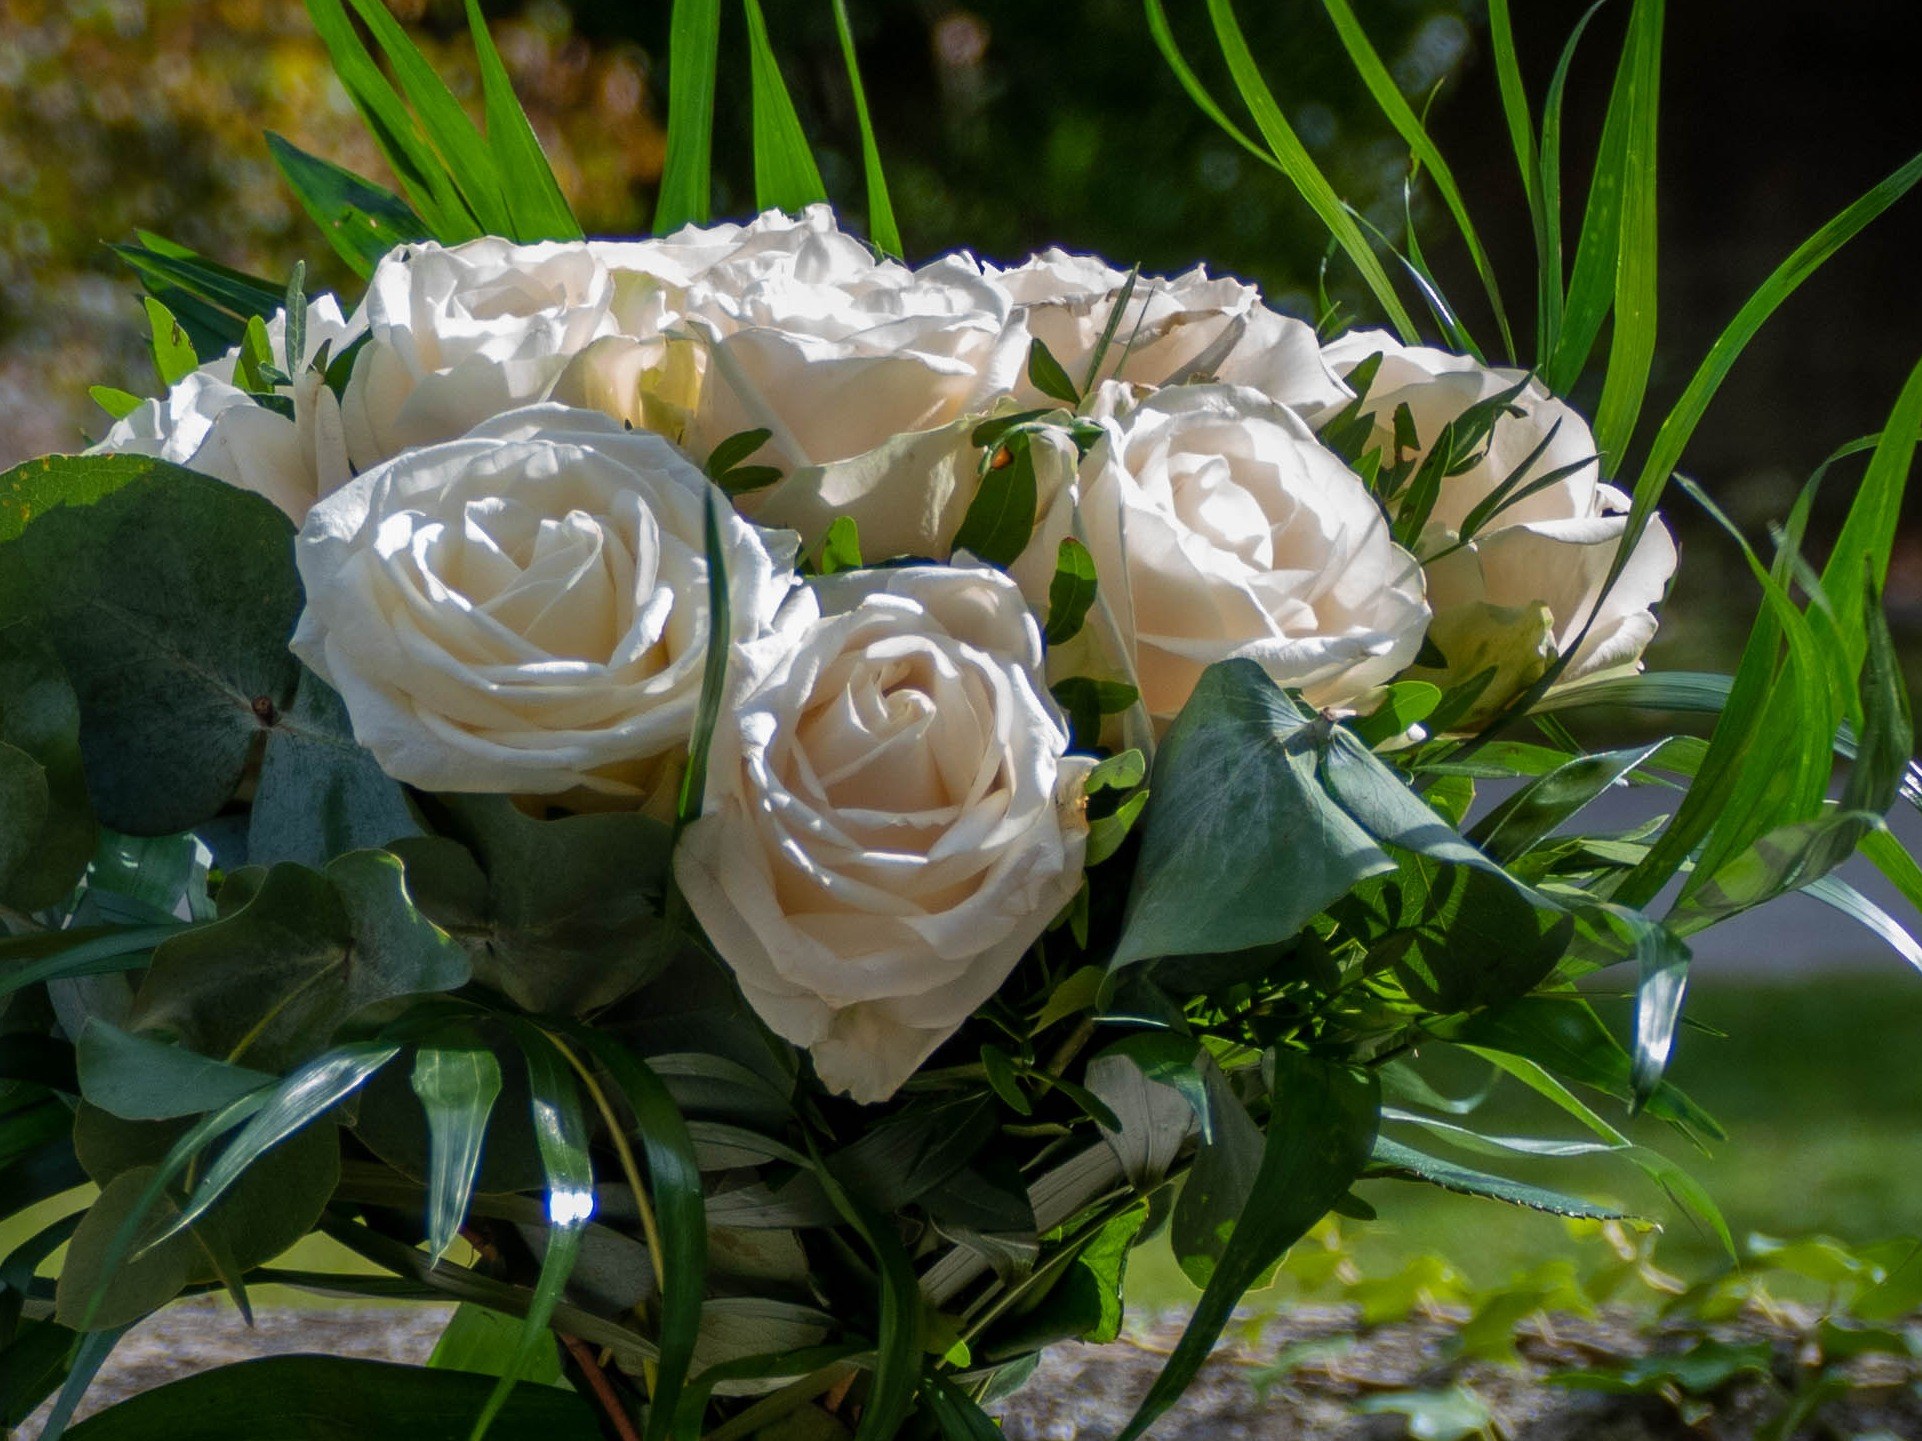 Bouquet rond de roses blanches